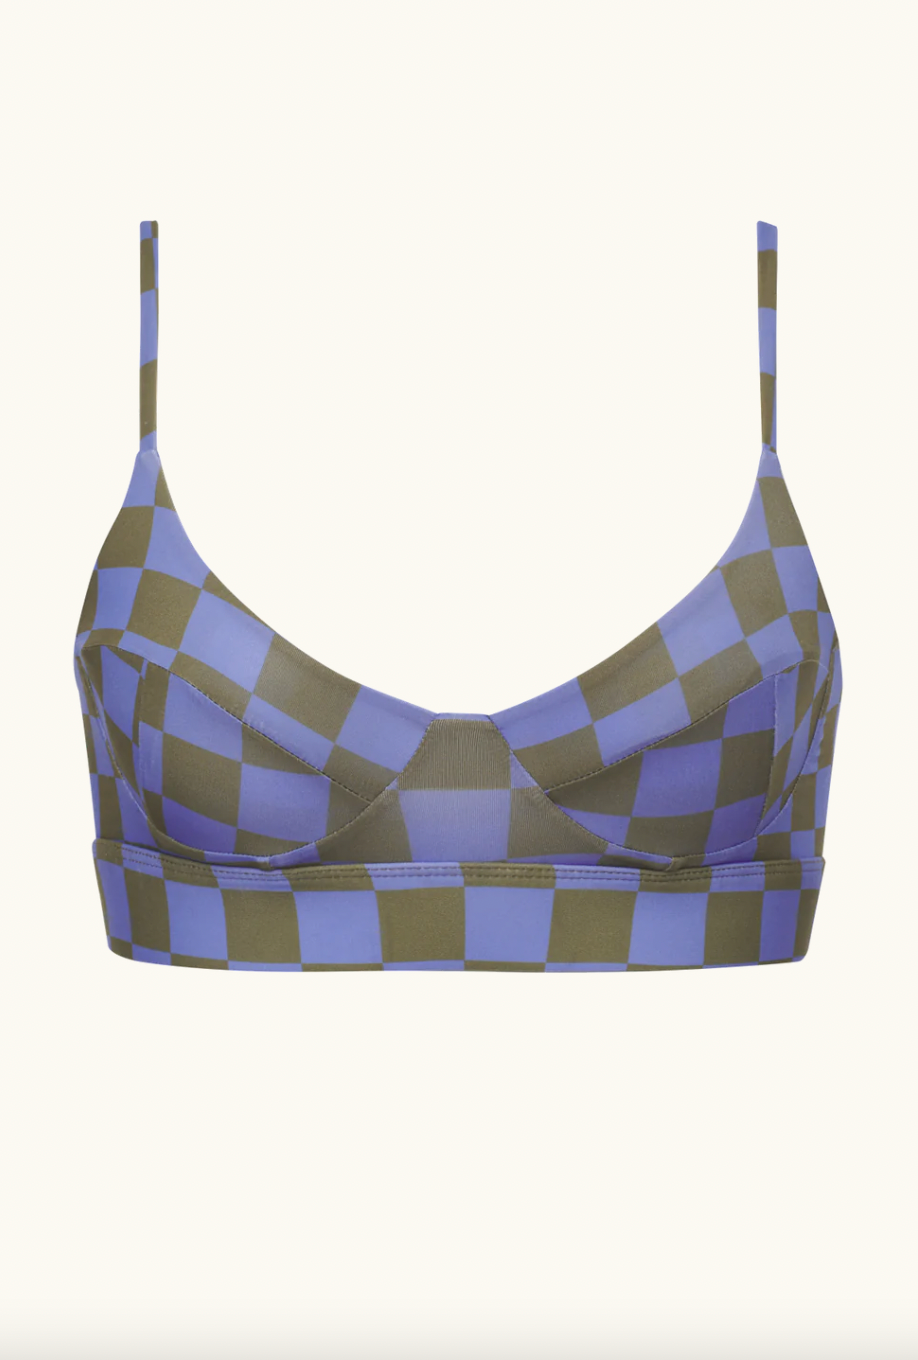 Acacia Swimwear Paisley Lining Top |Multiple Colors